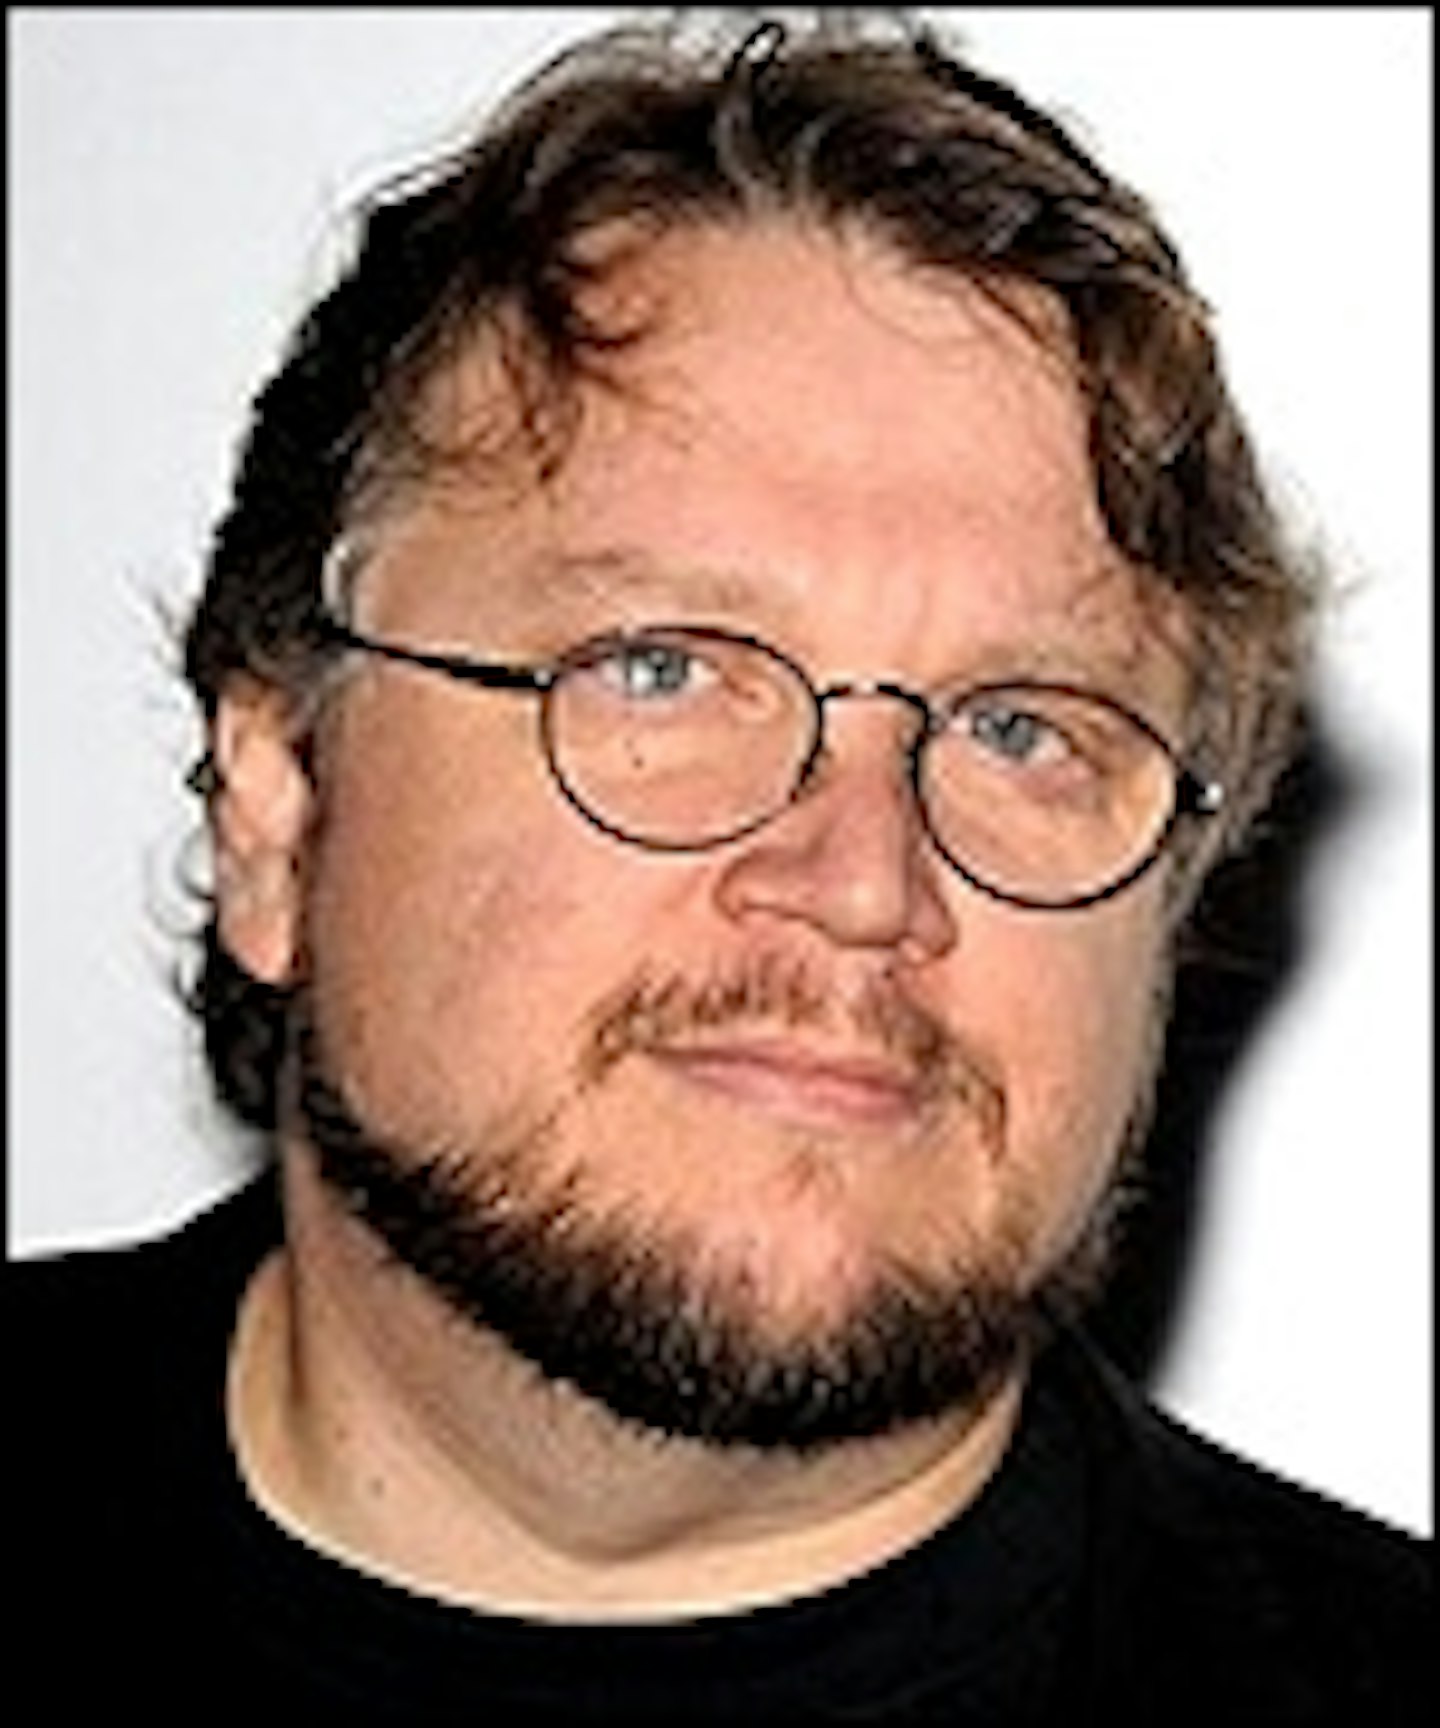 Del Toro Tempted to Make Pacific Rim?